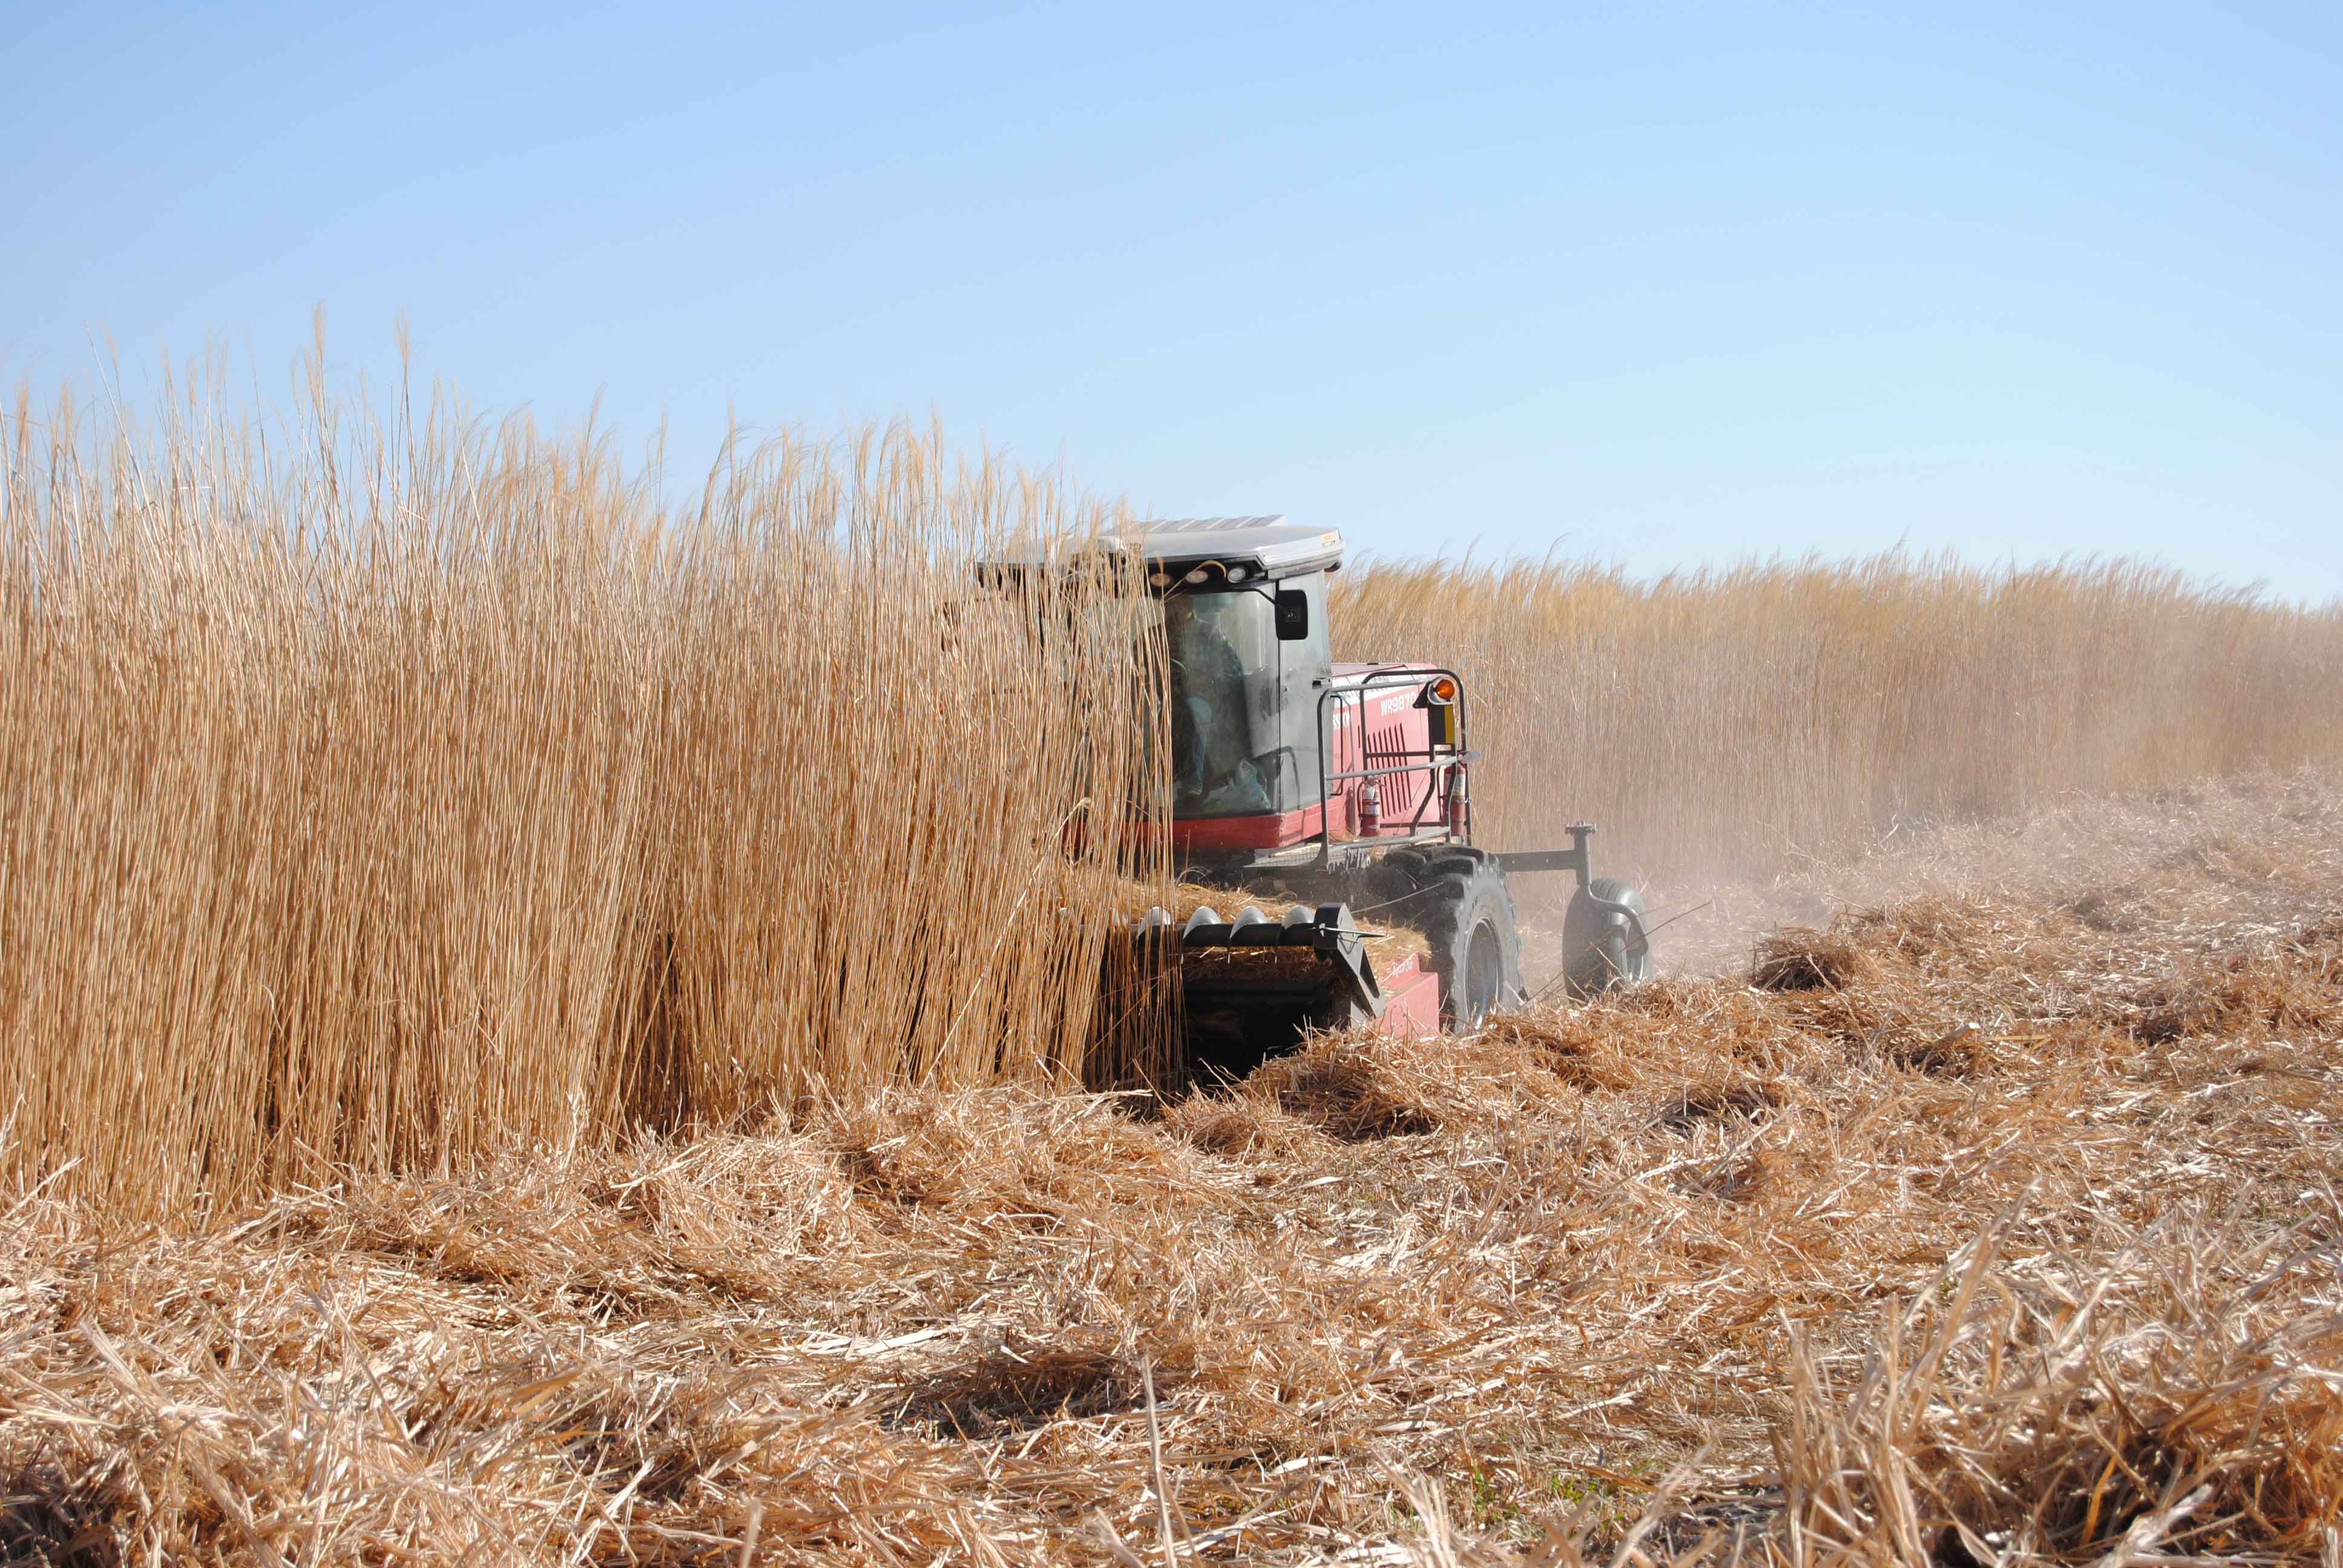 Missouri Miscanthus harvest will be underway in the next few weeks